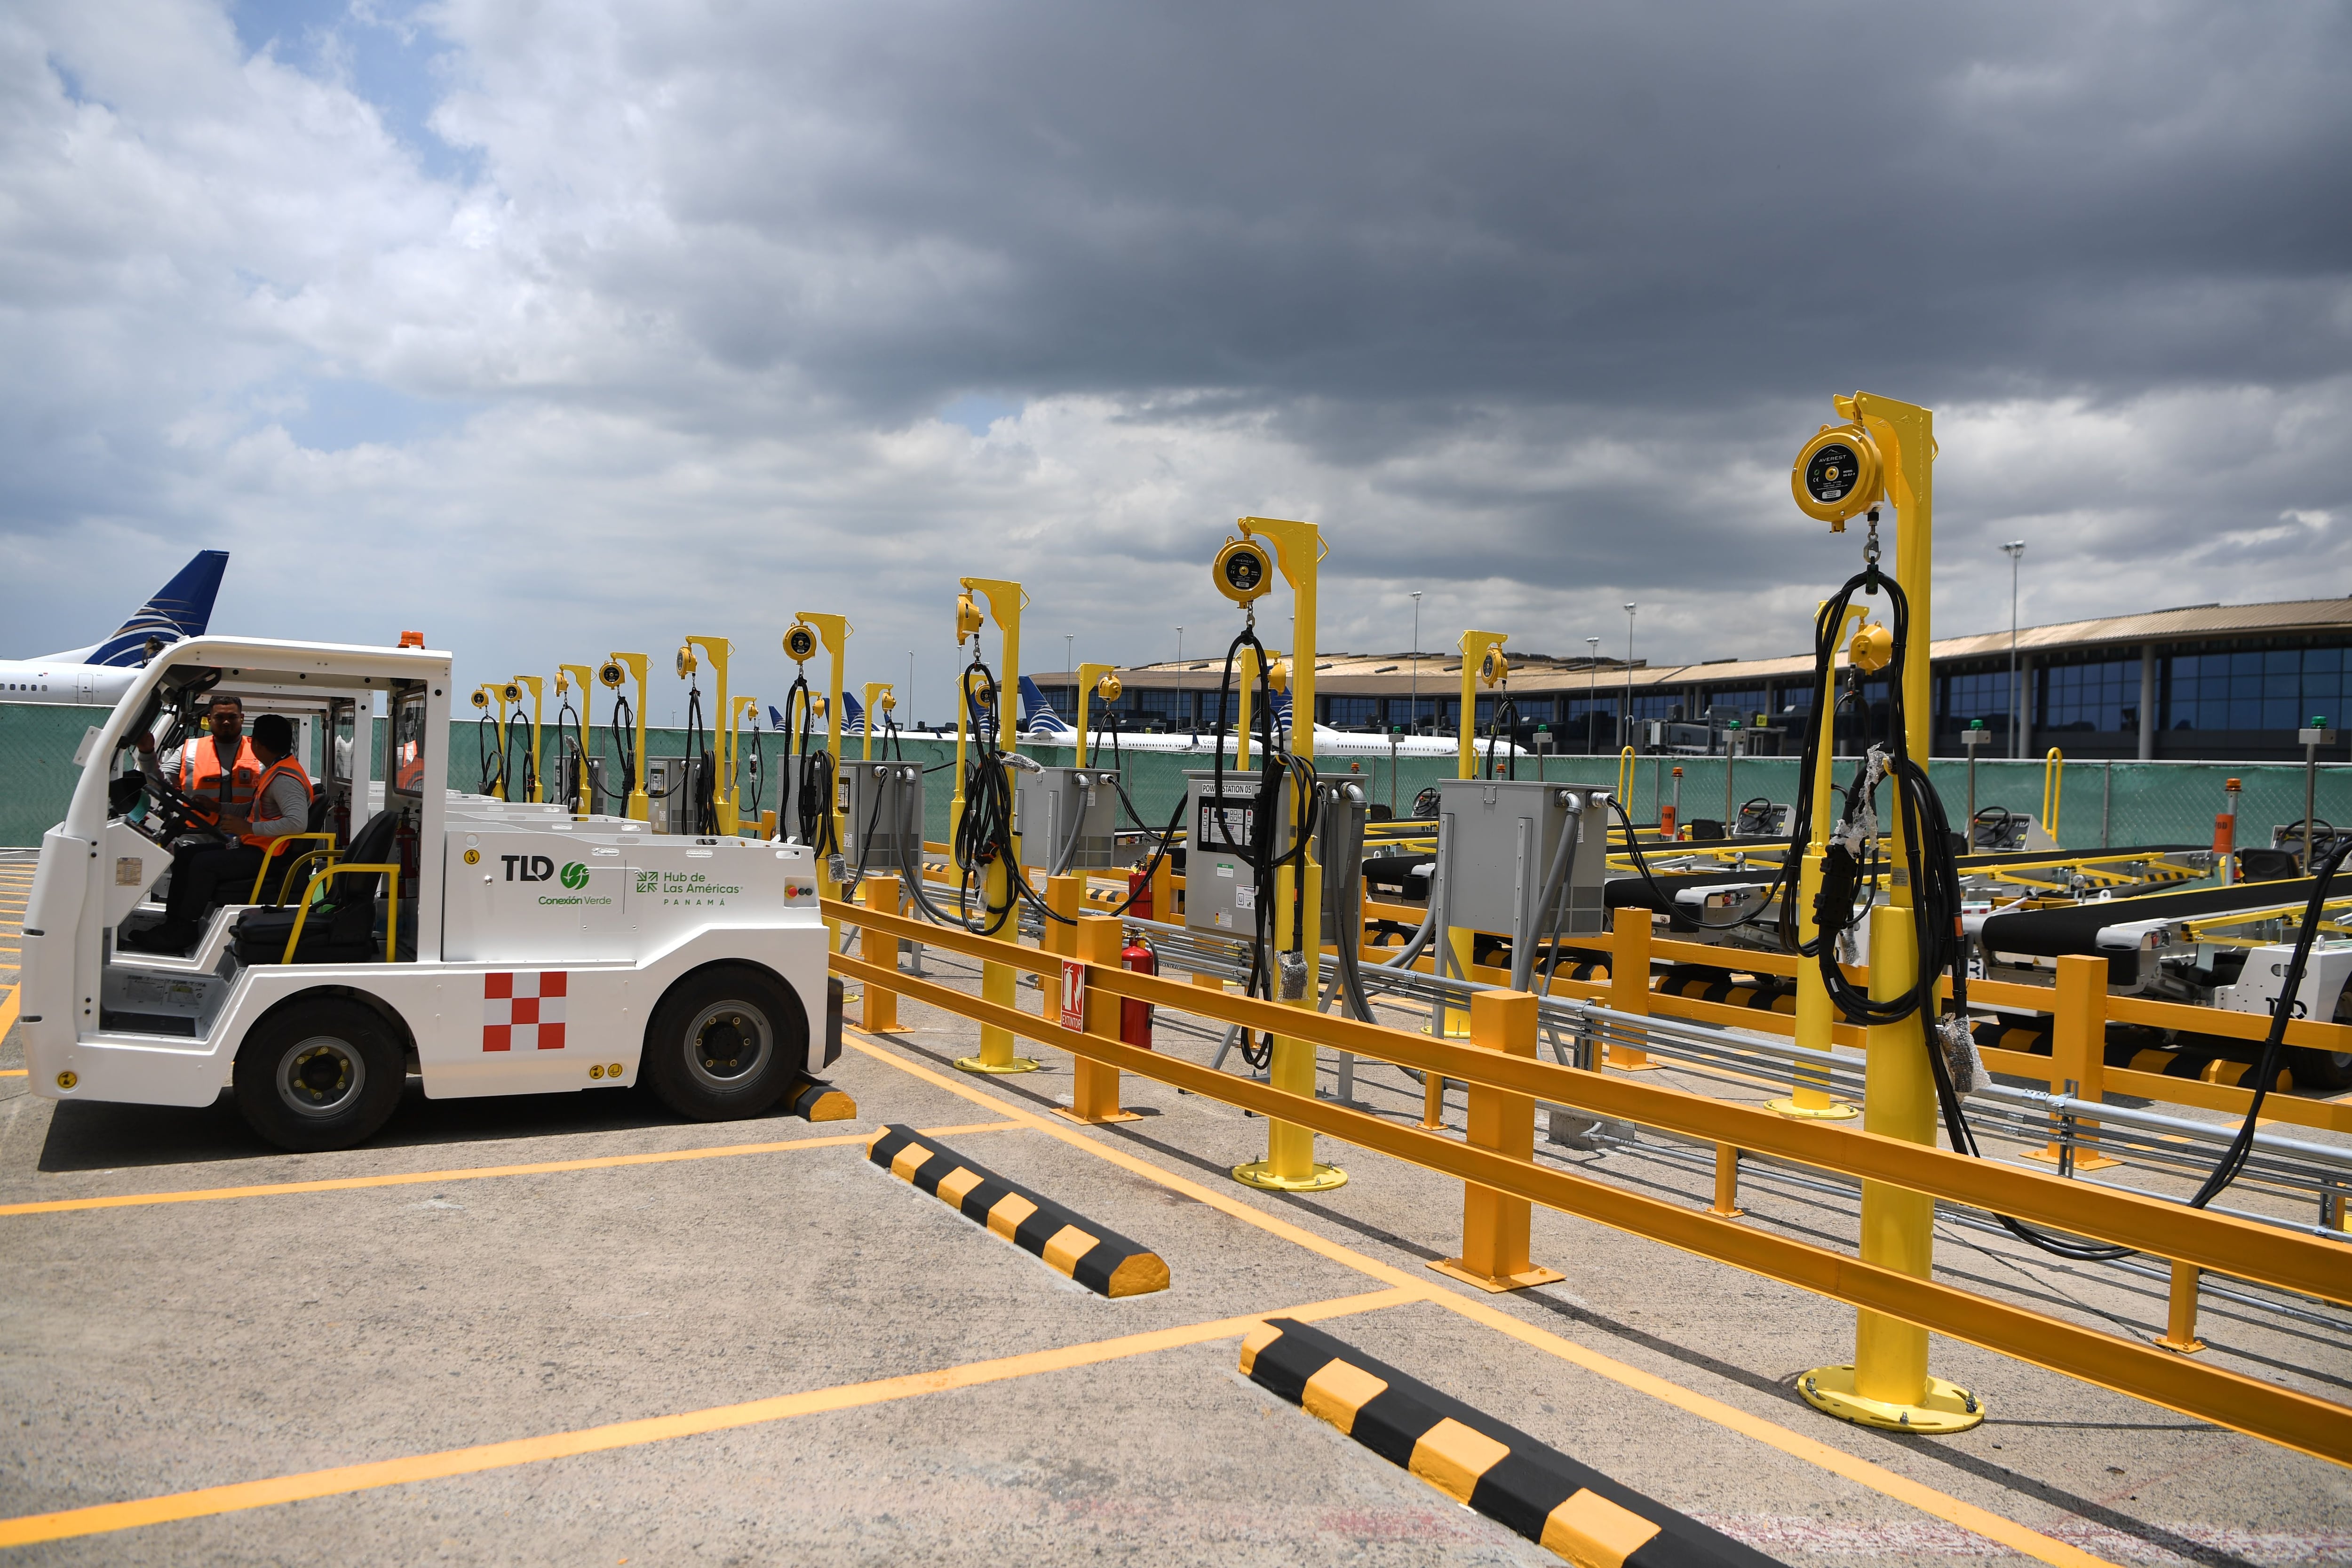 La incorporación de equipos eléctricos para asistir a las operaciones de la aerolínea en rampa del aeropuerto es parte de la estrategia, por ejemplo en Panamá. Agustín Herrera.